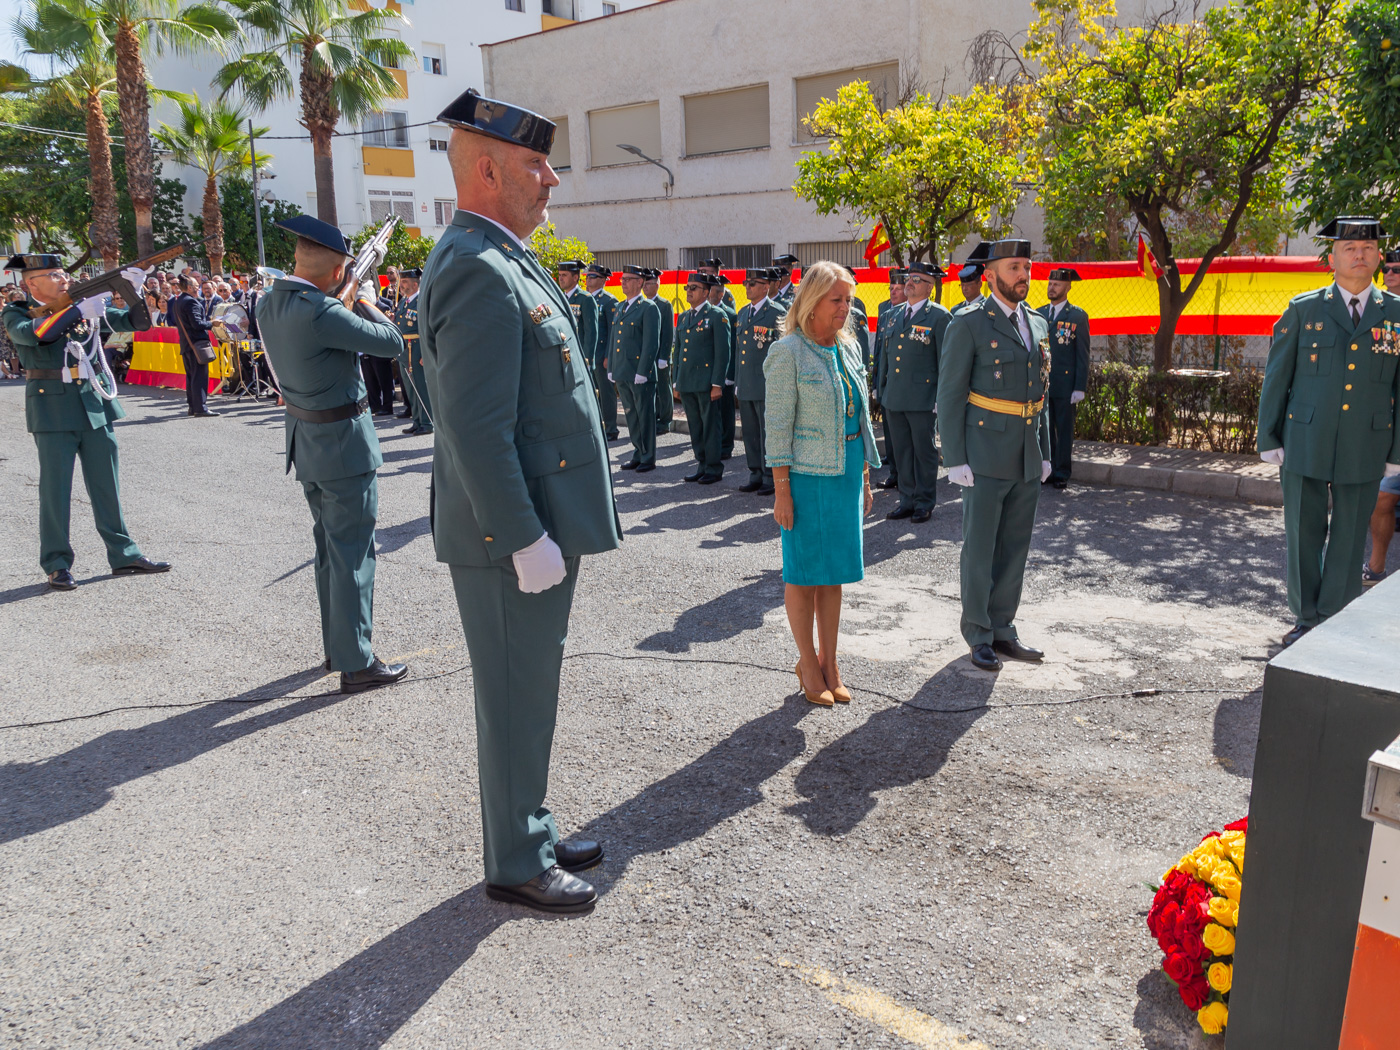 La alcaldesa reivindica “la grandeza y la unidad de España” en el Día de la Hispanidad y traslada un mensaje de apoyo a los miembros de la Guardia Civil que se encuentran en misiones de paz